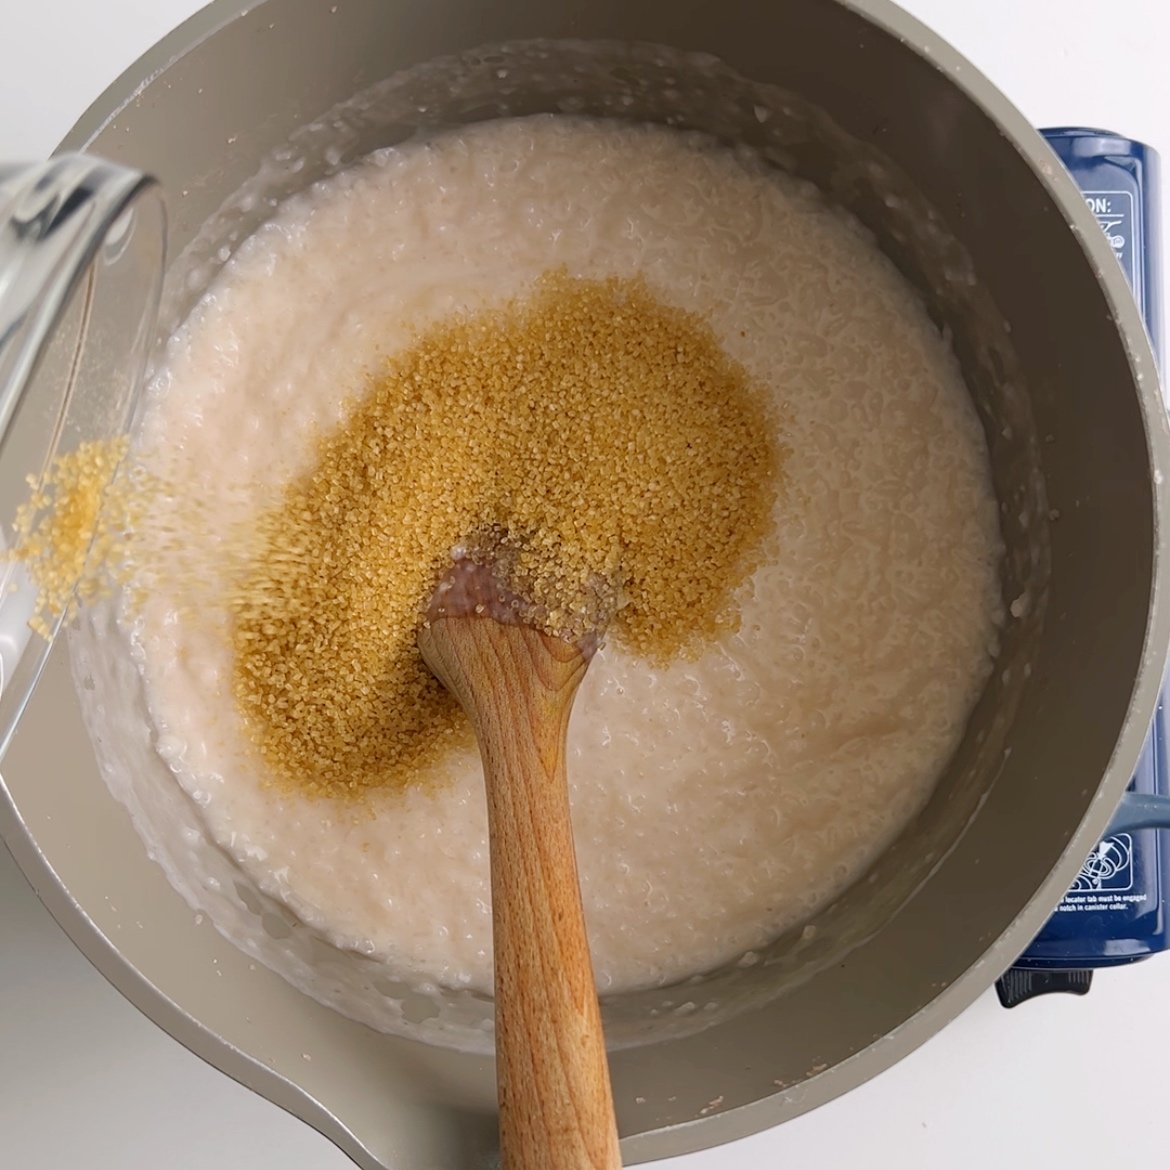 Rice porridge and Demerara sugar on top